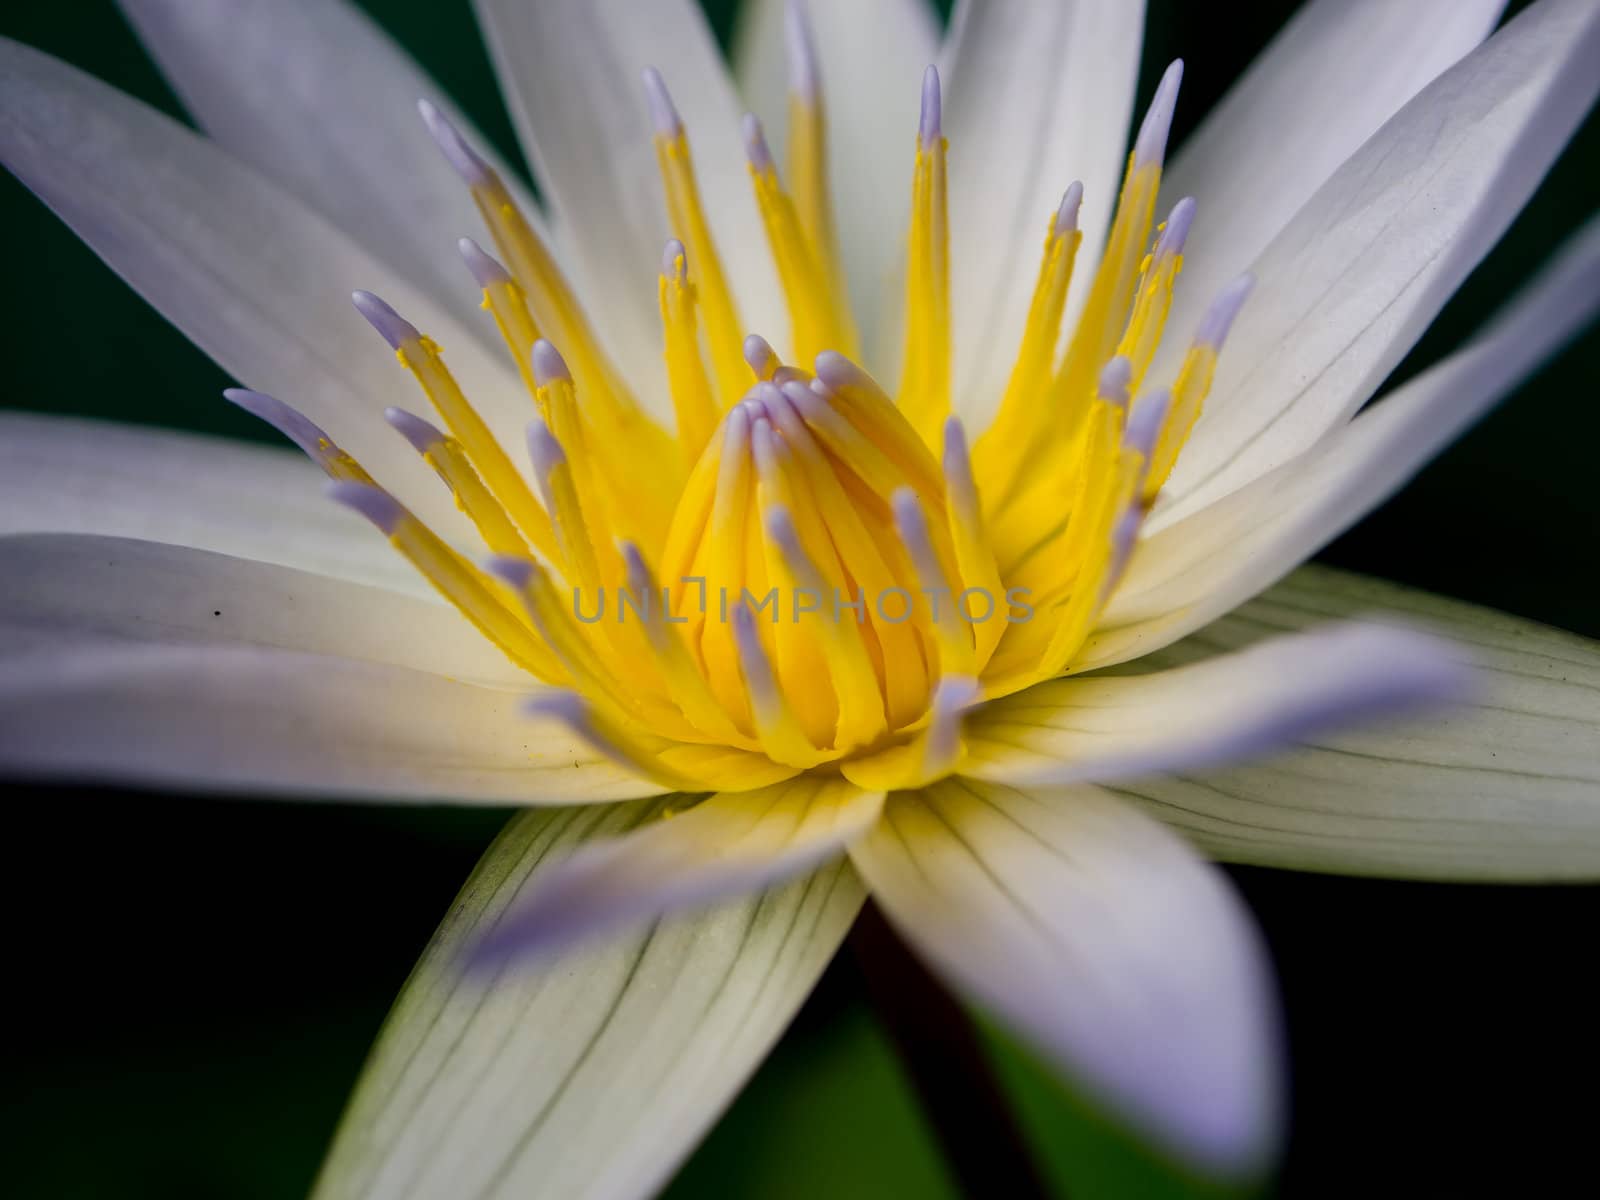 White lotus2 by gjeerawut